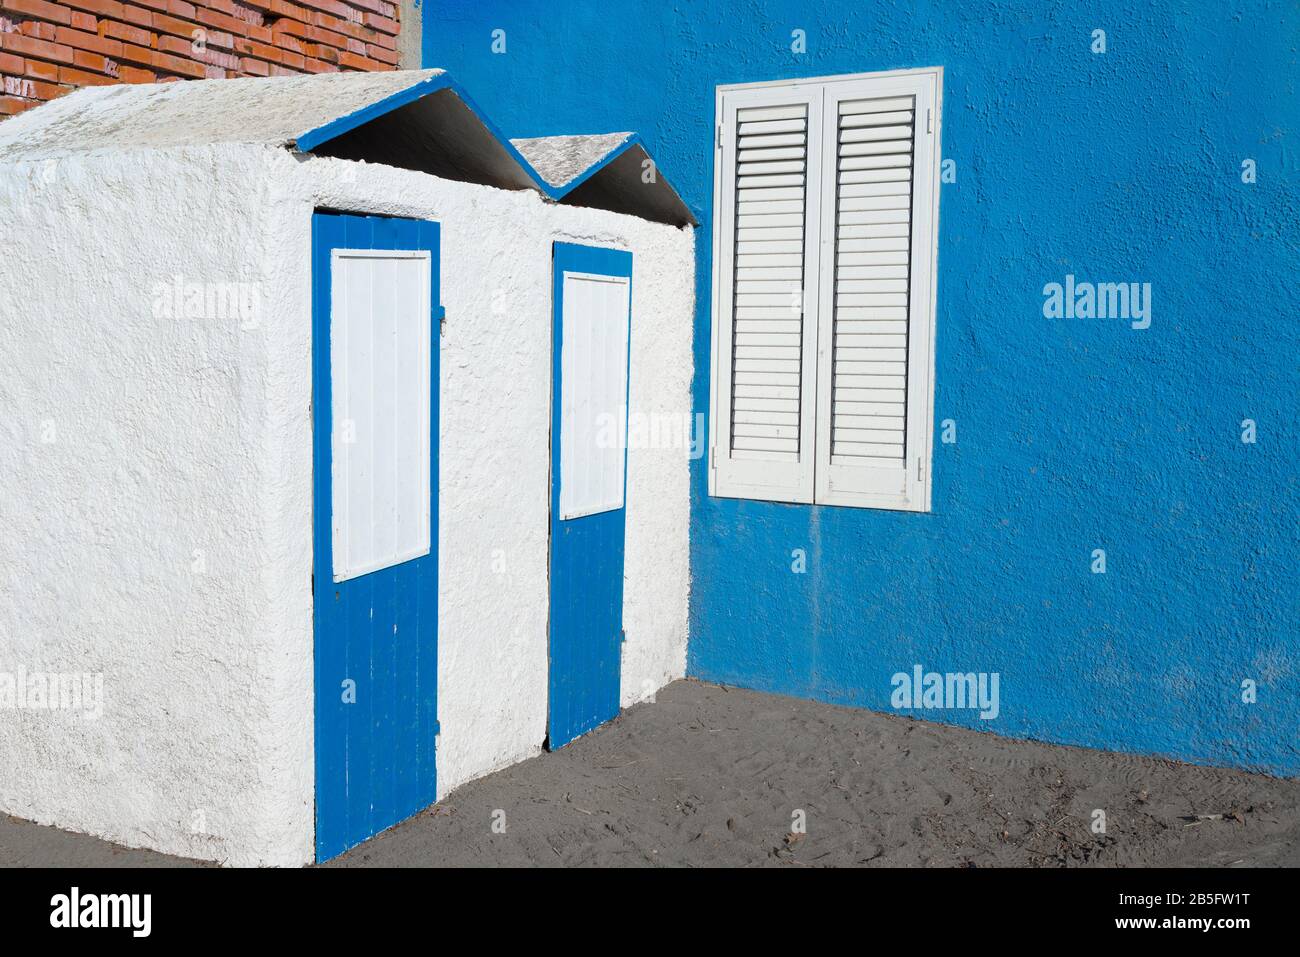 Cabañas junto al mar en concreto pintadas en azul pastel y blanco junto a la pared azul con ventana blanca con persianas cerradas Foto de stock